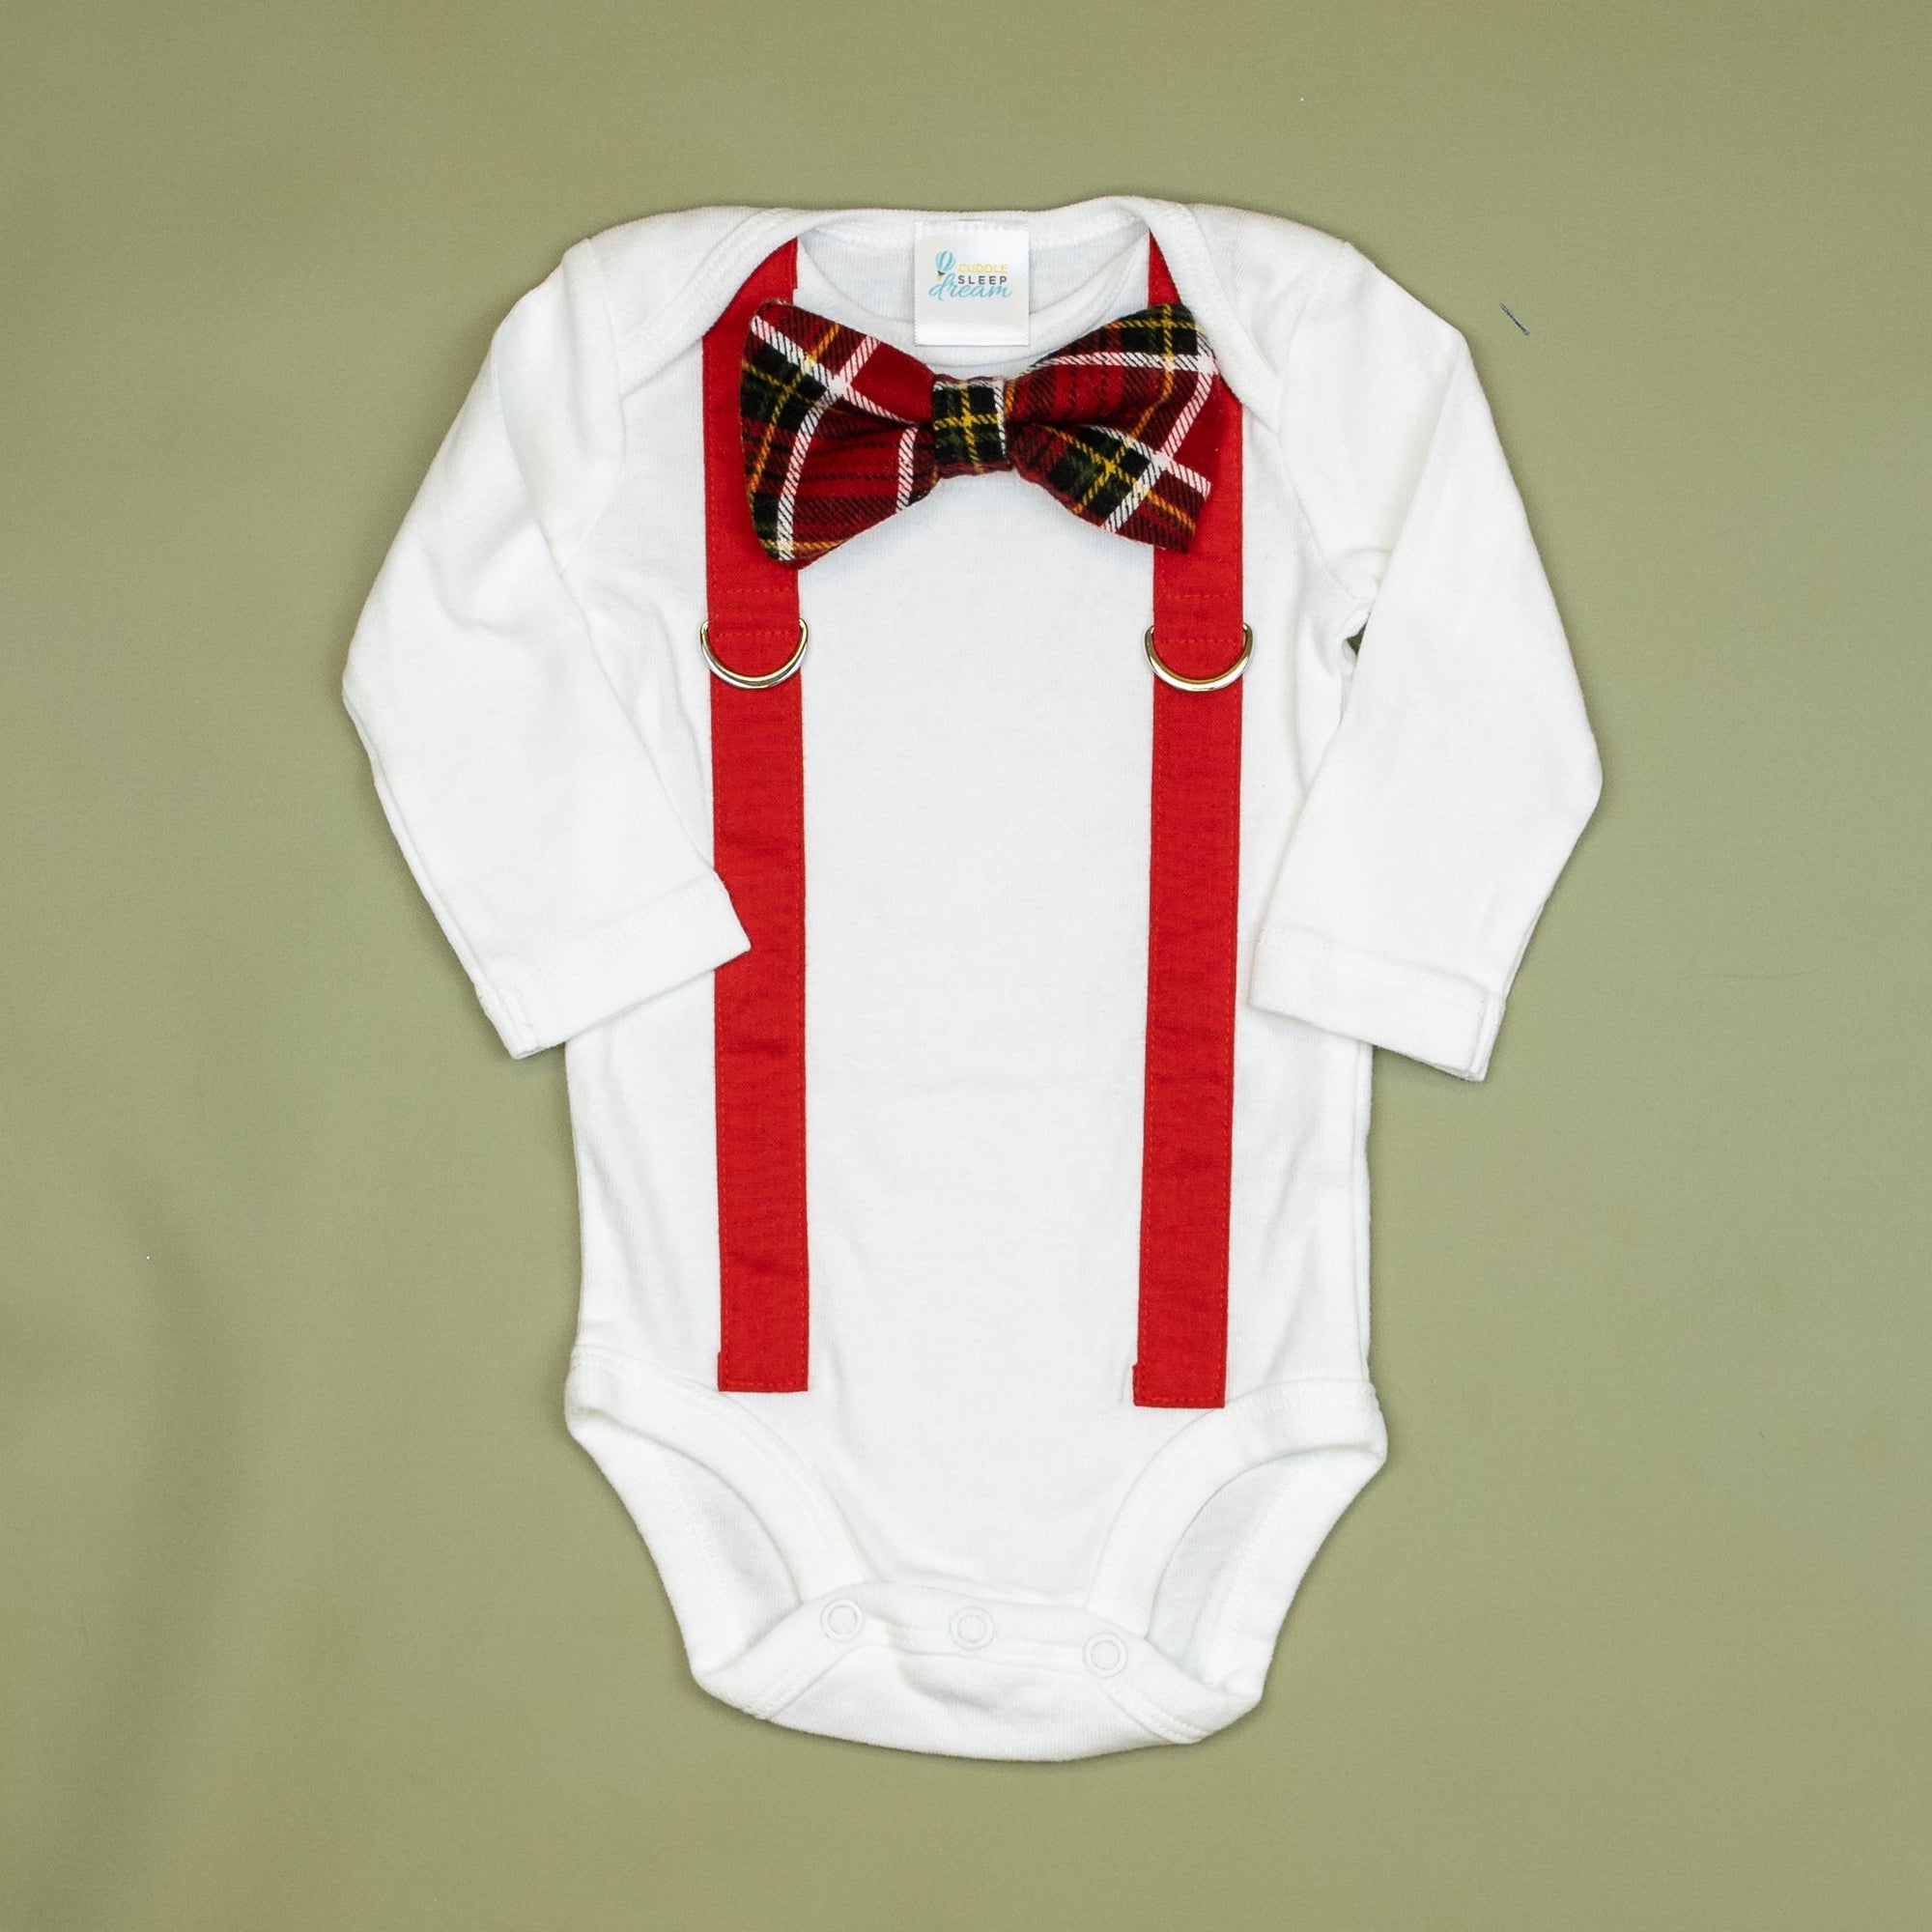 Cuddle Sleep Dream Oh Snap Red Suspenders / Heritage Plaid Tie